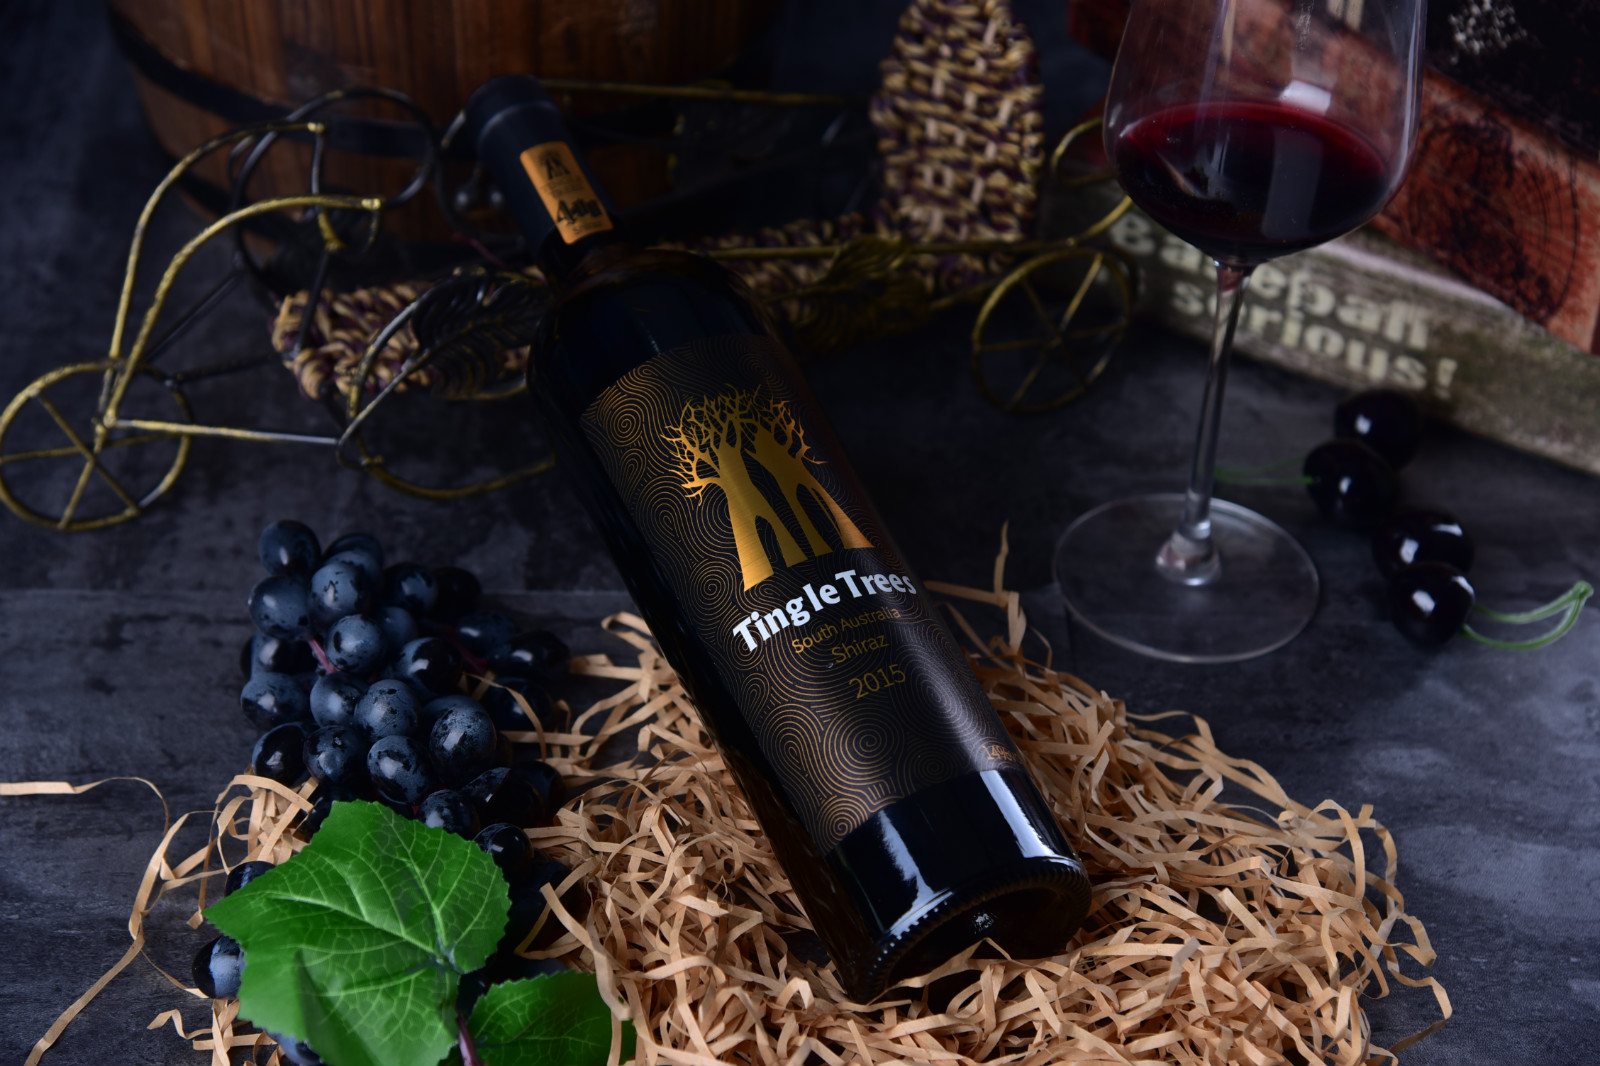 丁戈树好评率达到99% 有望成为澳洲葡萄酒第